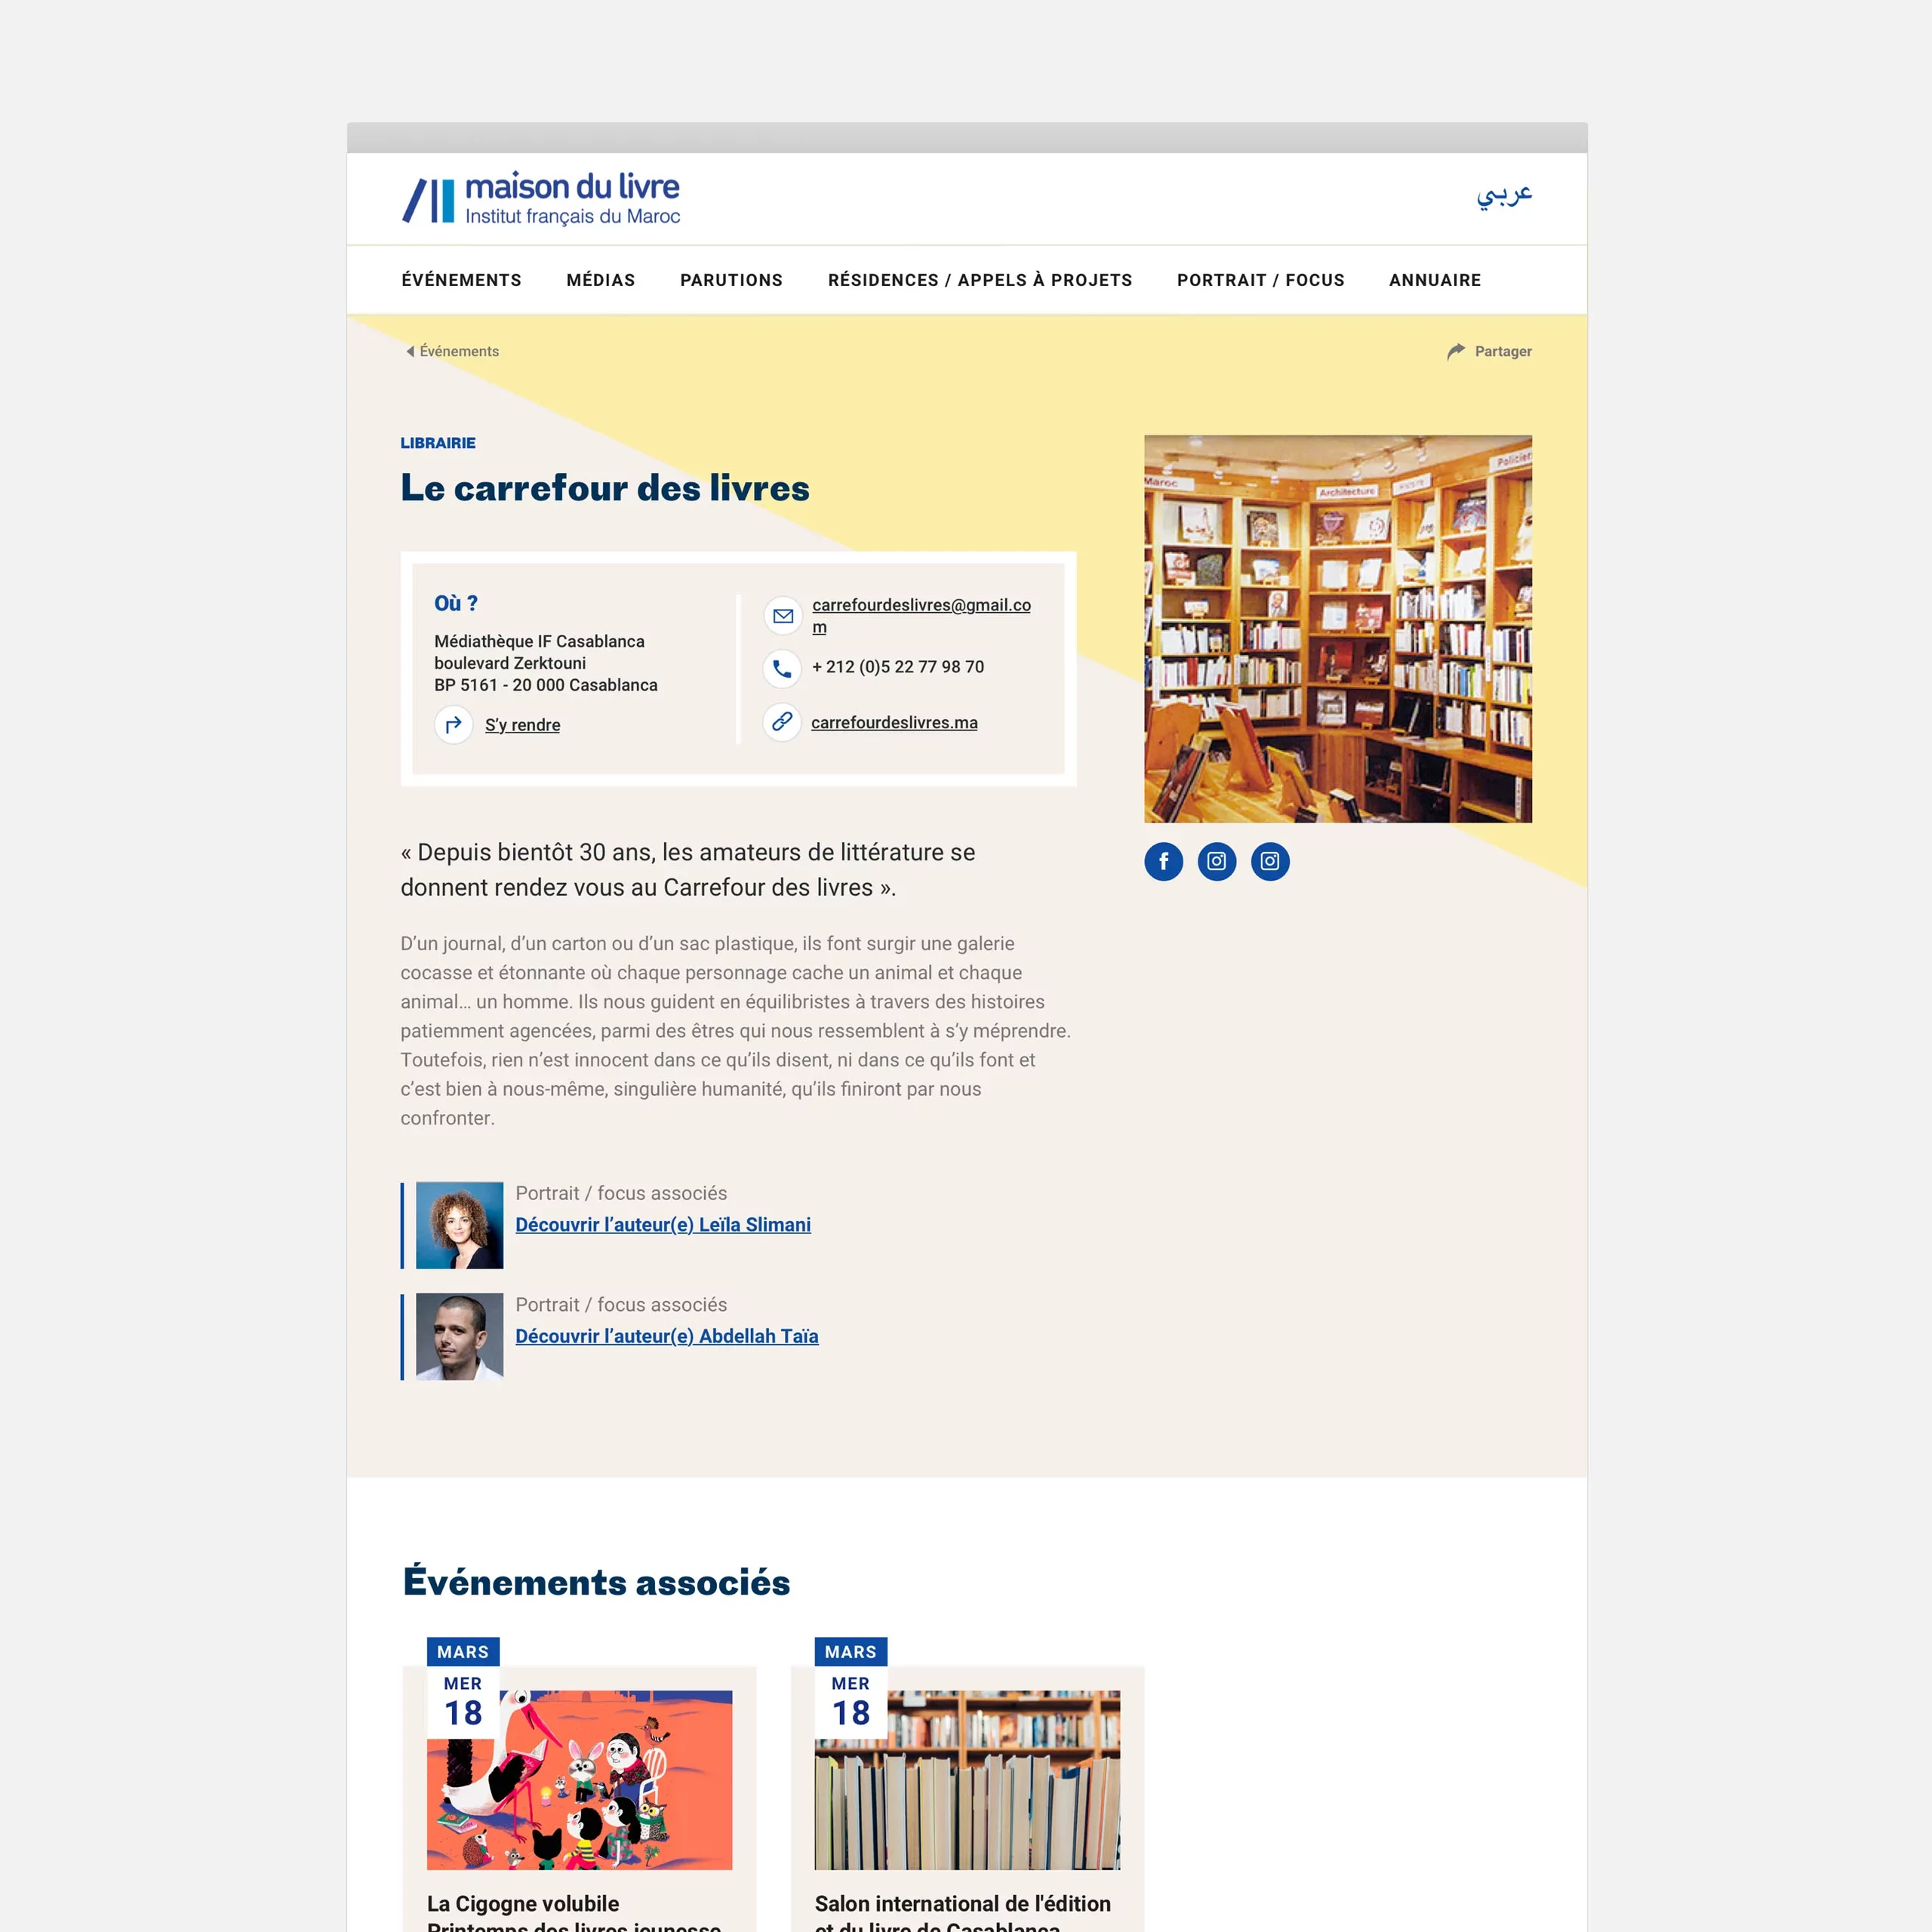 Maquette UI desktop d'une fiche annuaire d'une librairie, avec une photo de la librairie